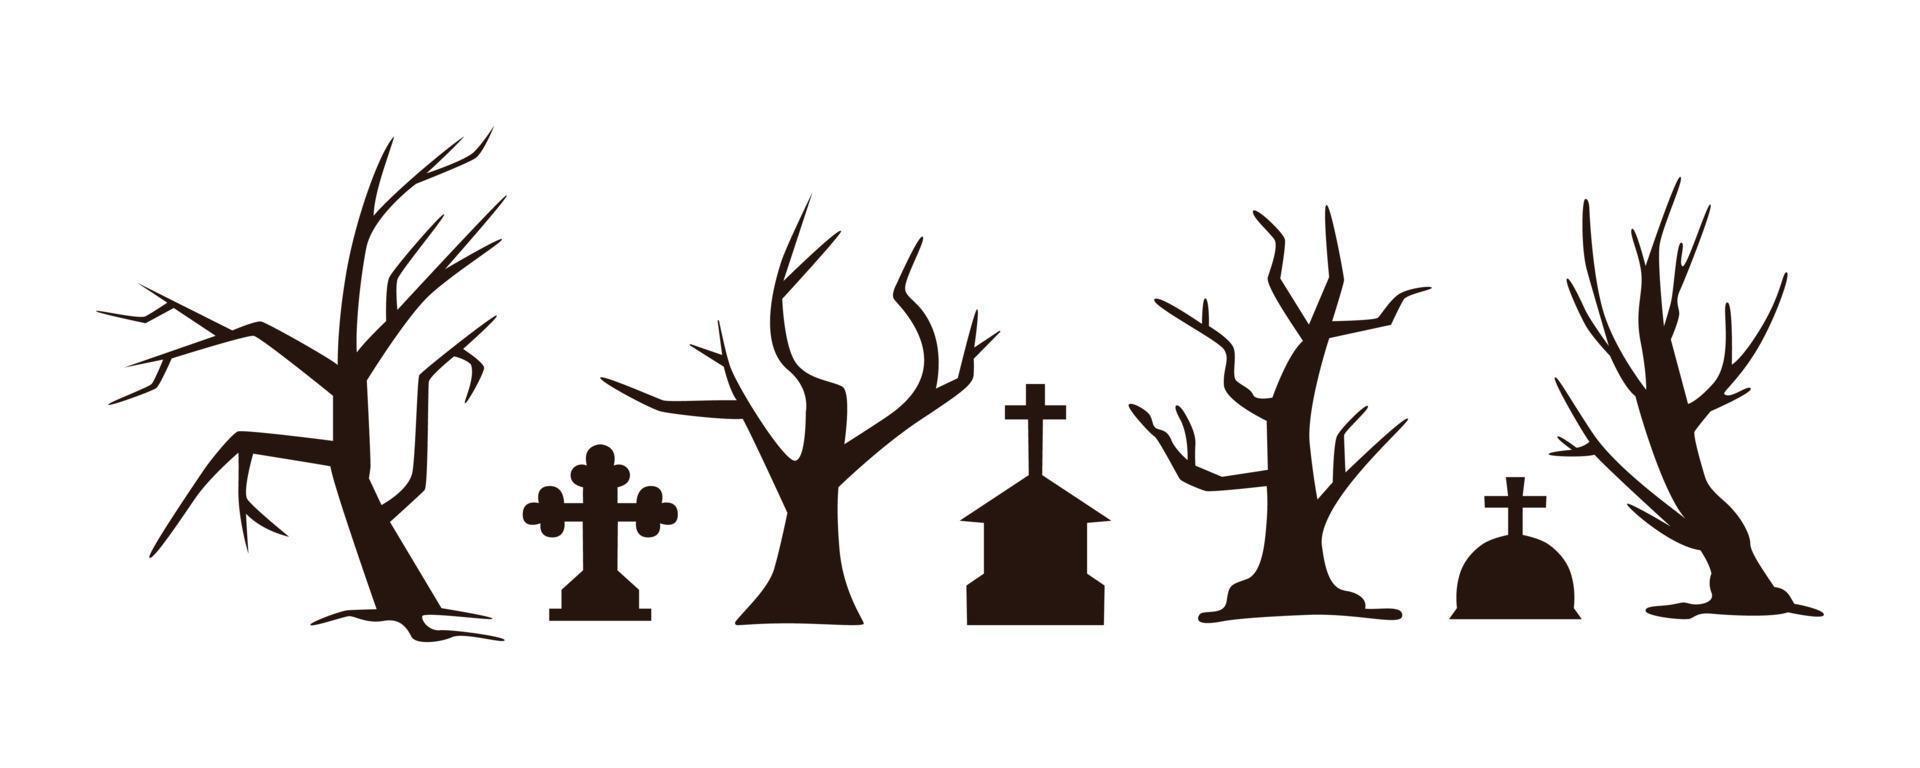 kuslig halloween kyrkogård gravstenar kistor vektor samling. läskigt träd silhuetter